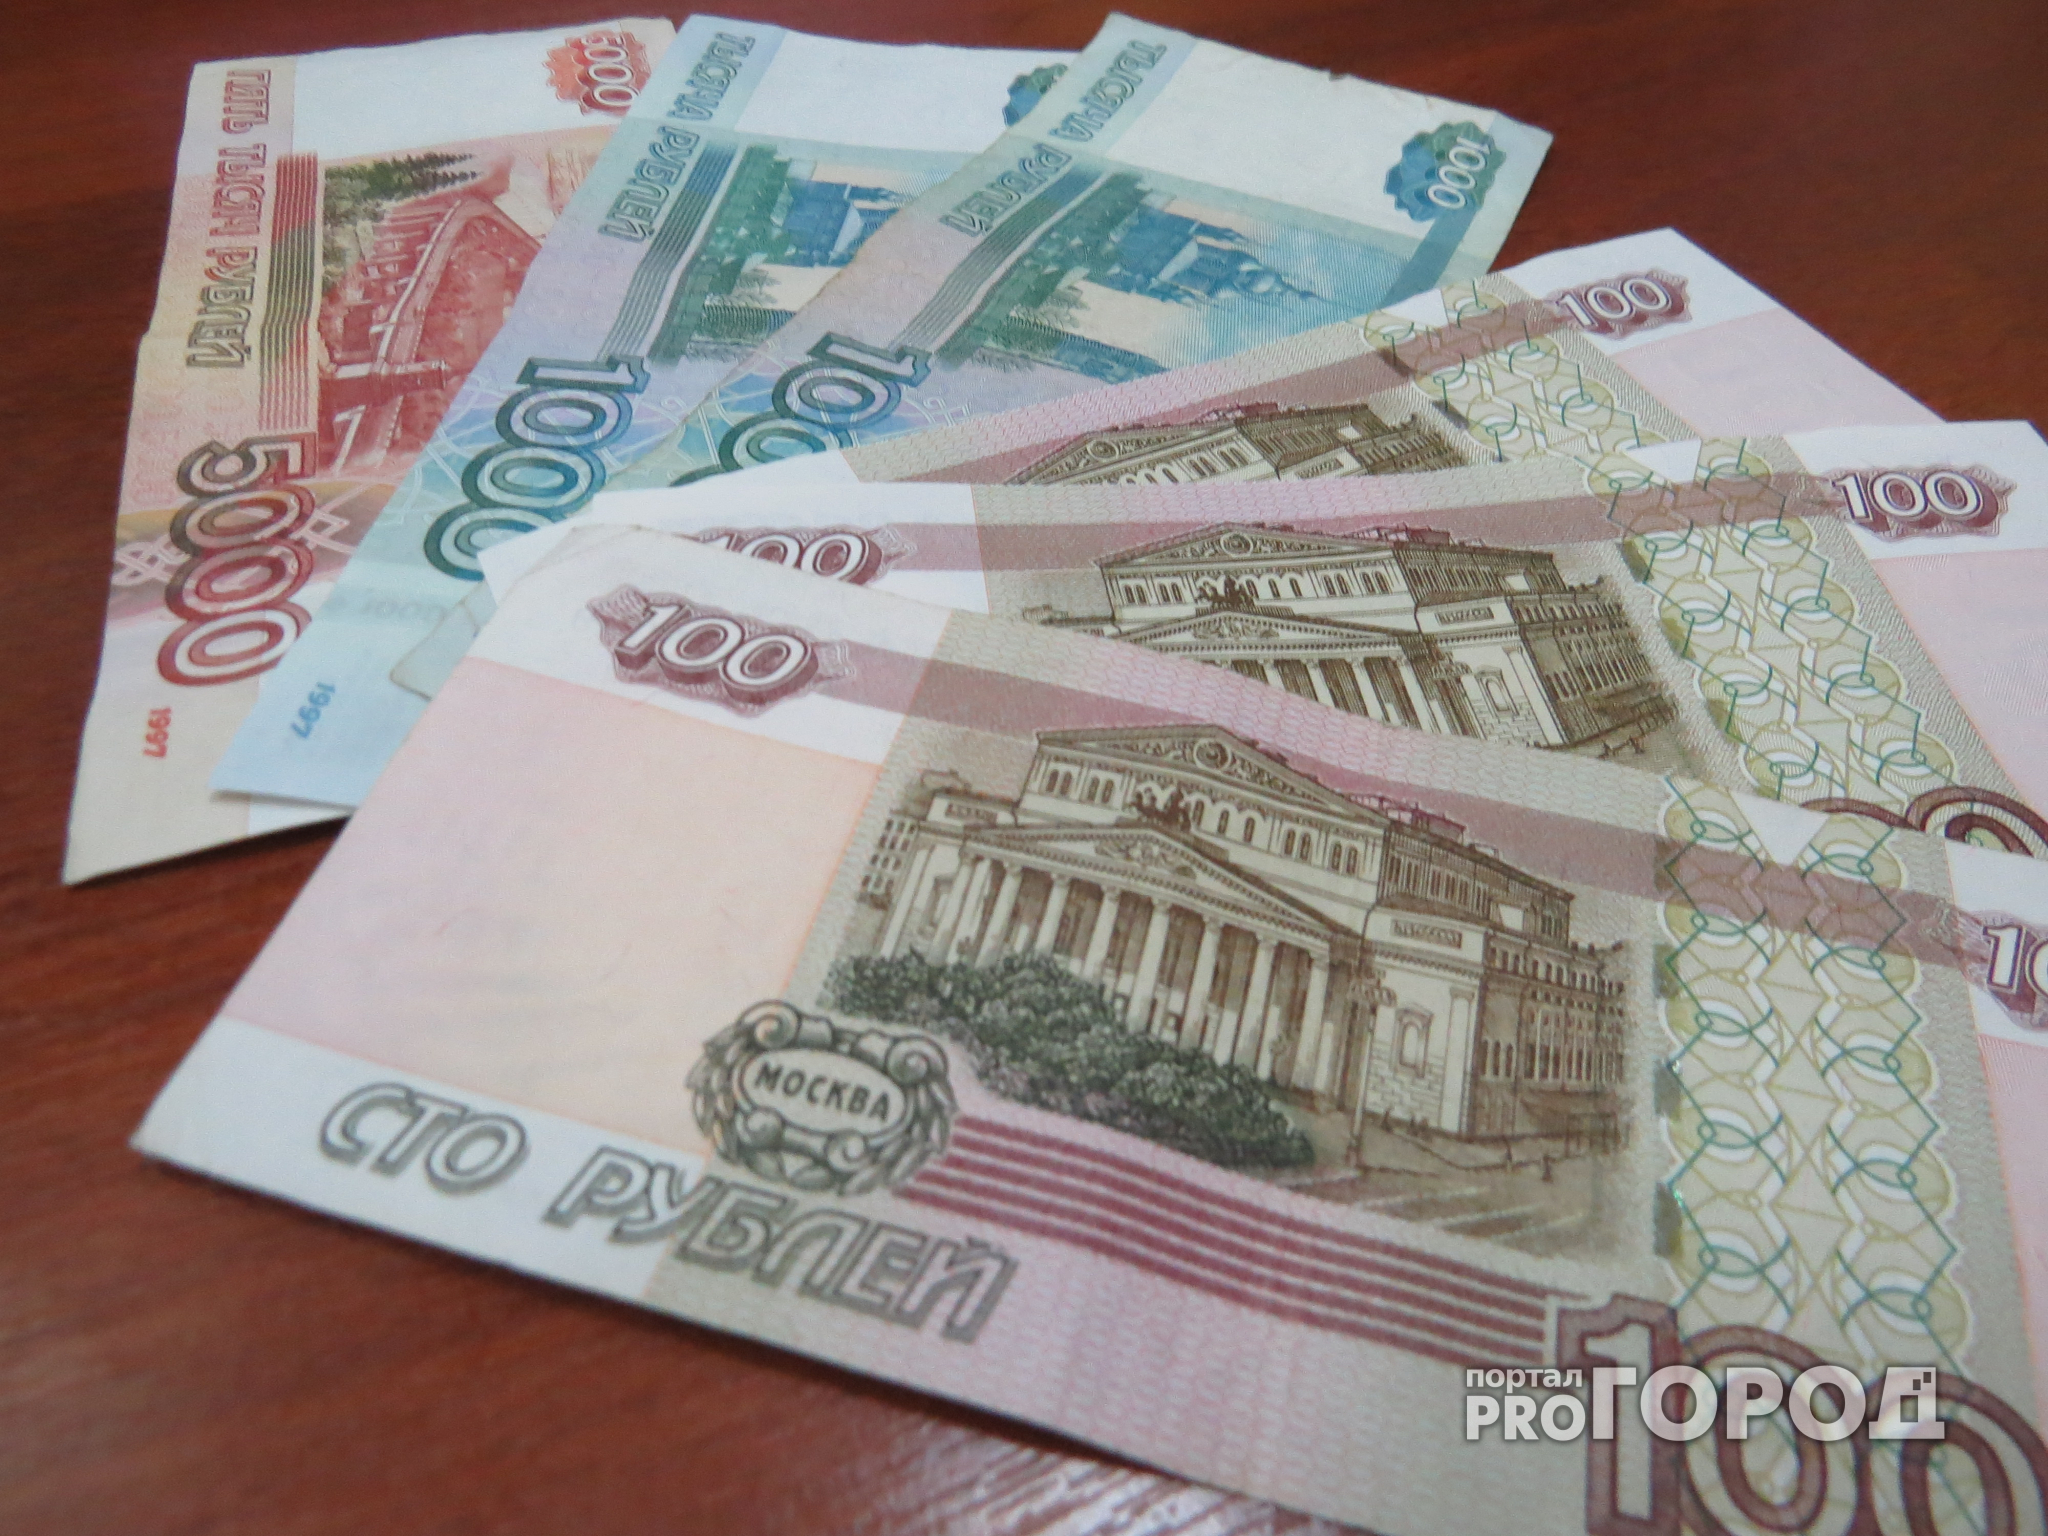 Коммунальные платежи жителей Кстова ушли на погашение кредита чиновника